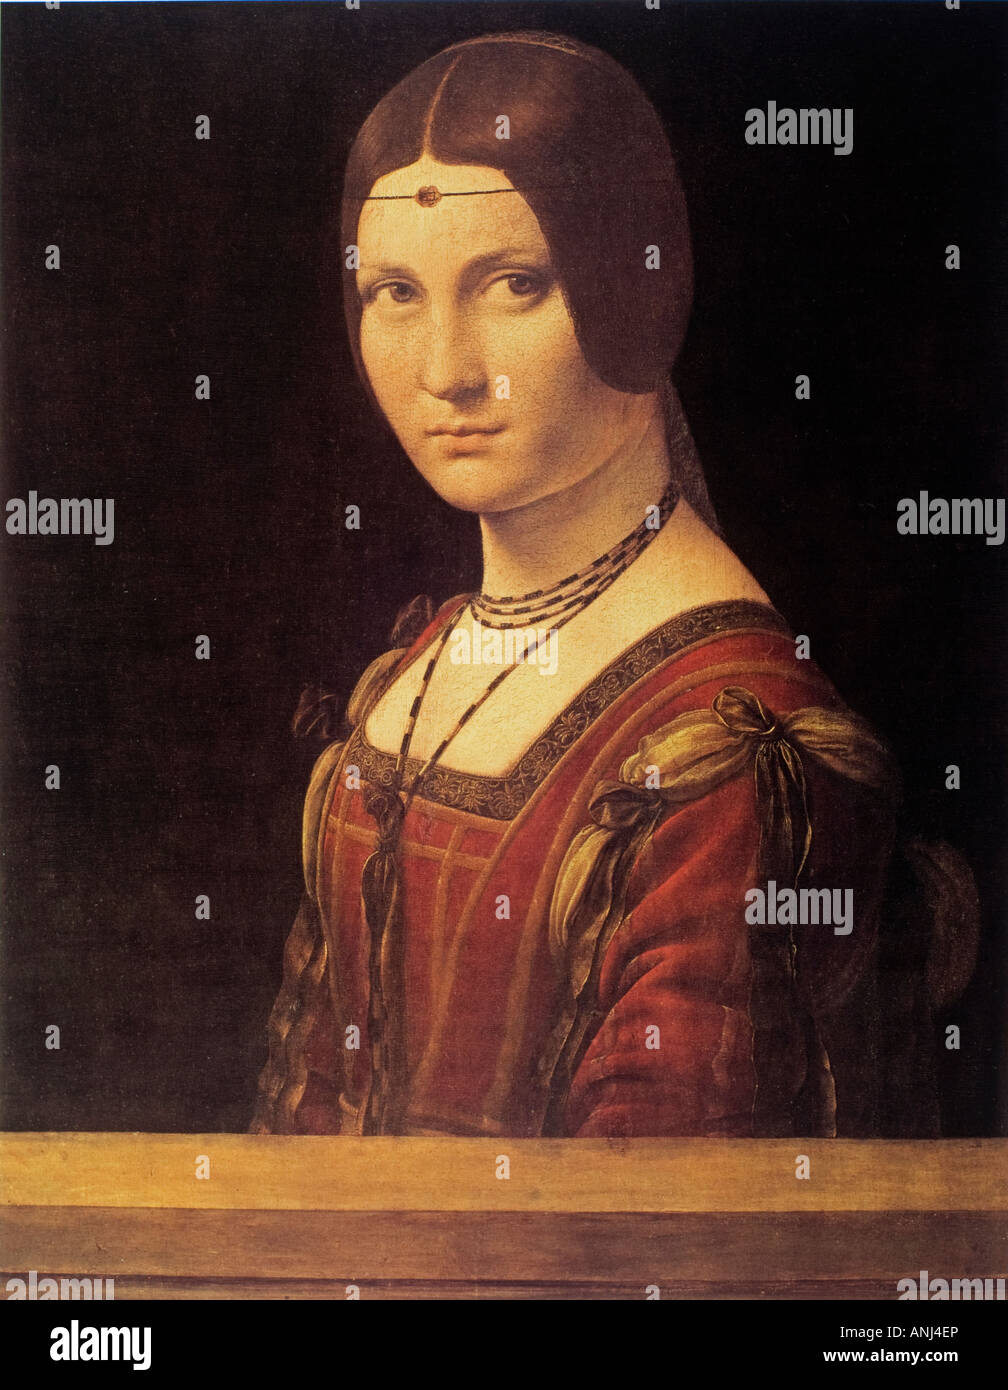 portrait of La Belle Ferroniere attributed to Leonardo da Vinci Stock Photo